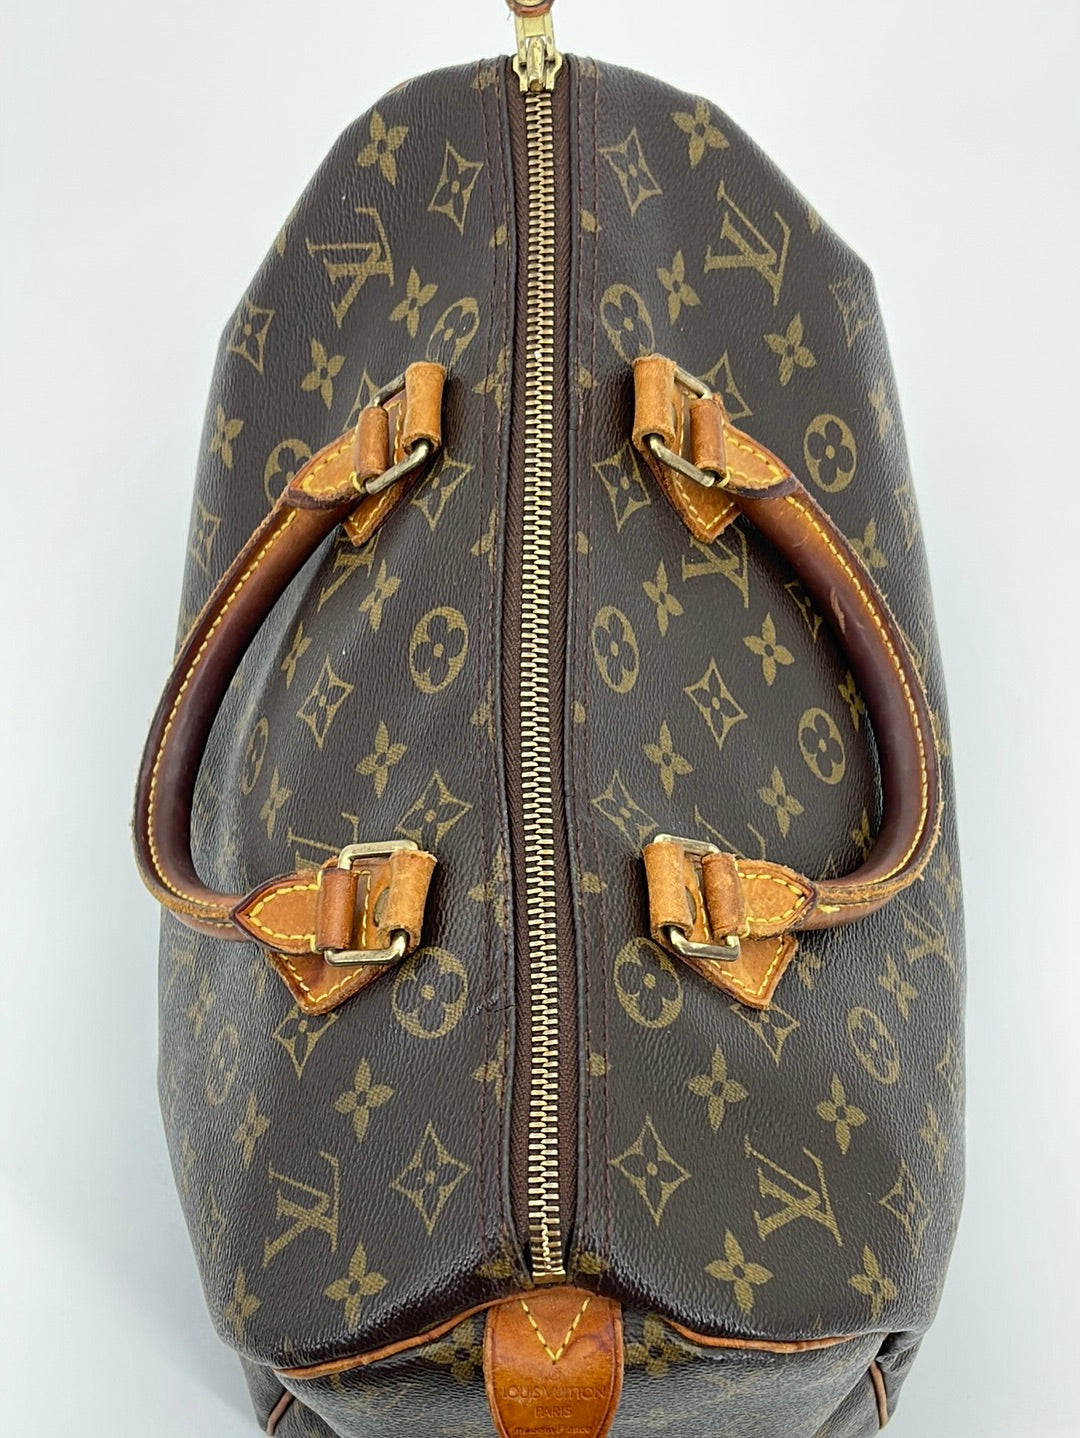 PRELOVED Louis Vuitton Monogram Speedy 30 Bag TH0033 061323 $200 OFF